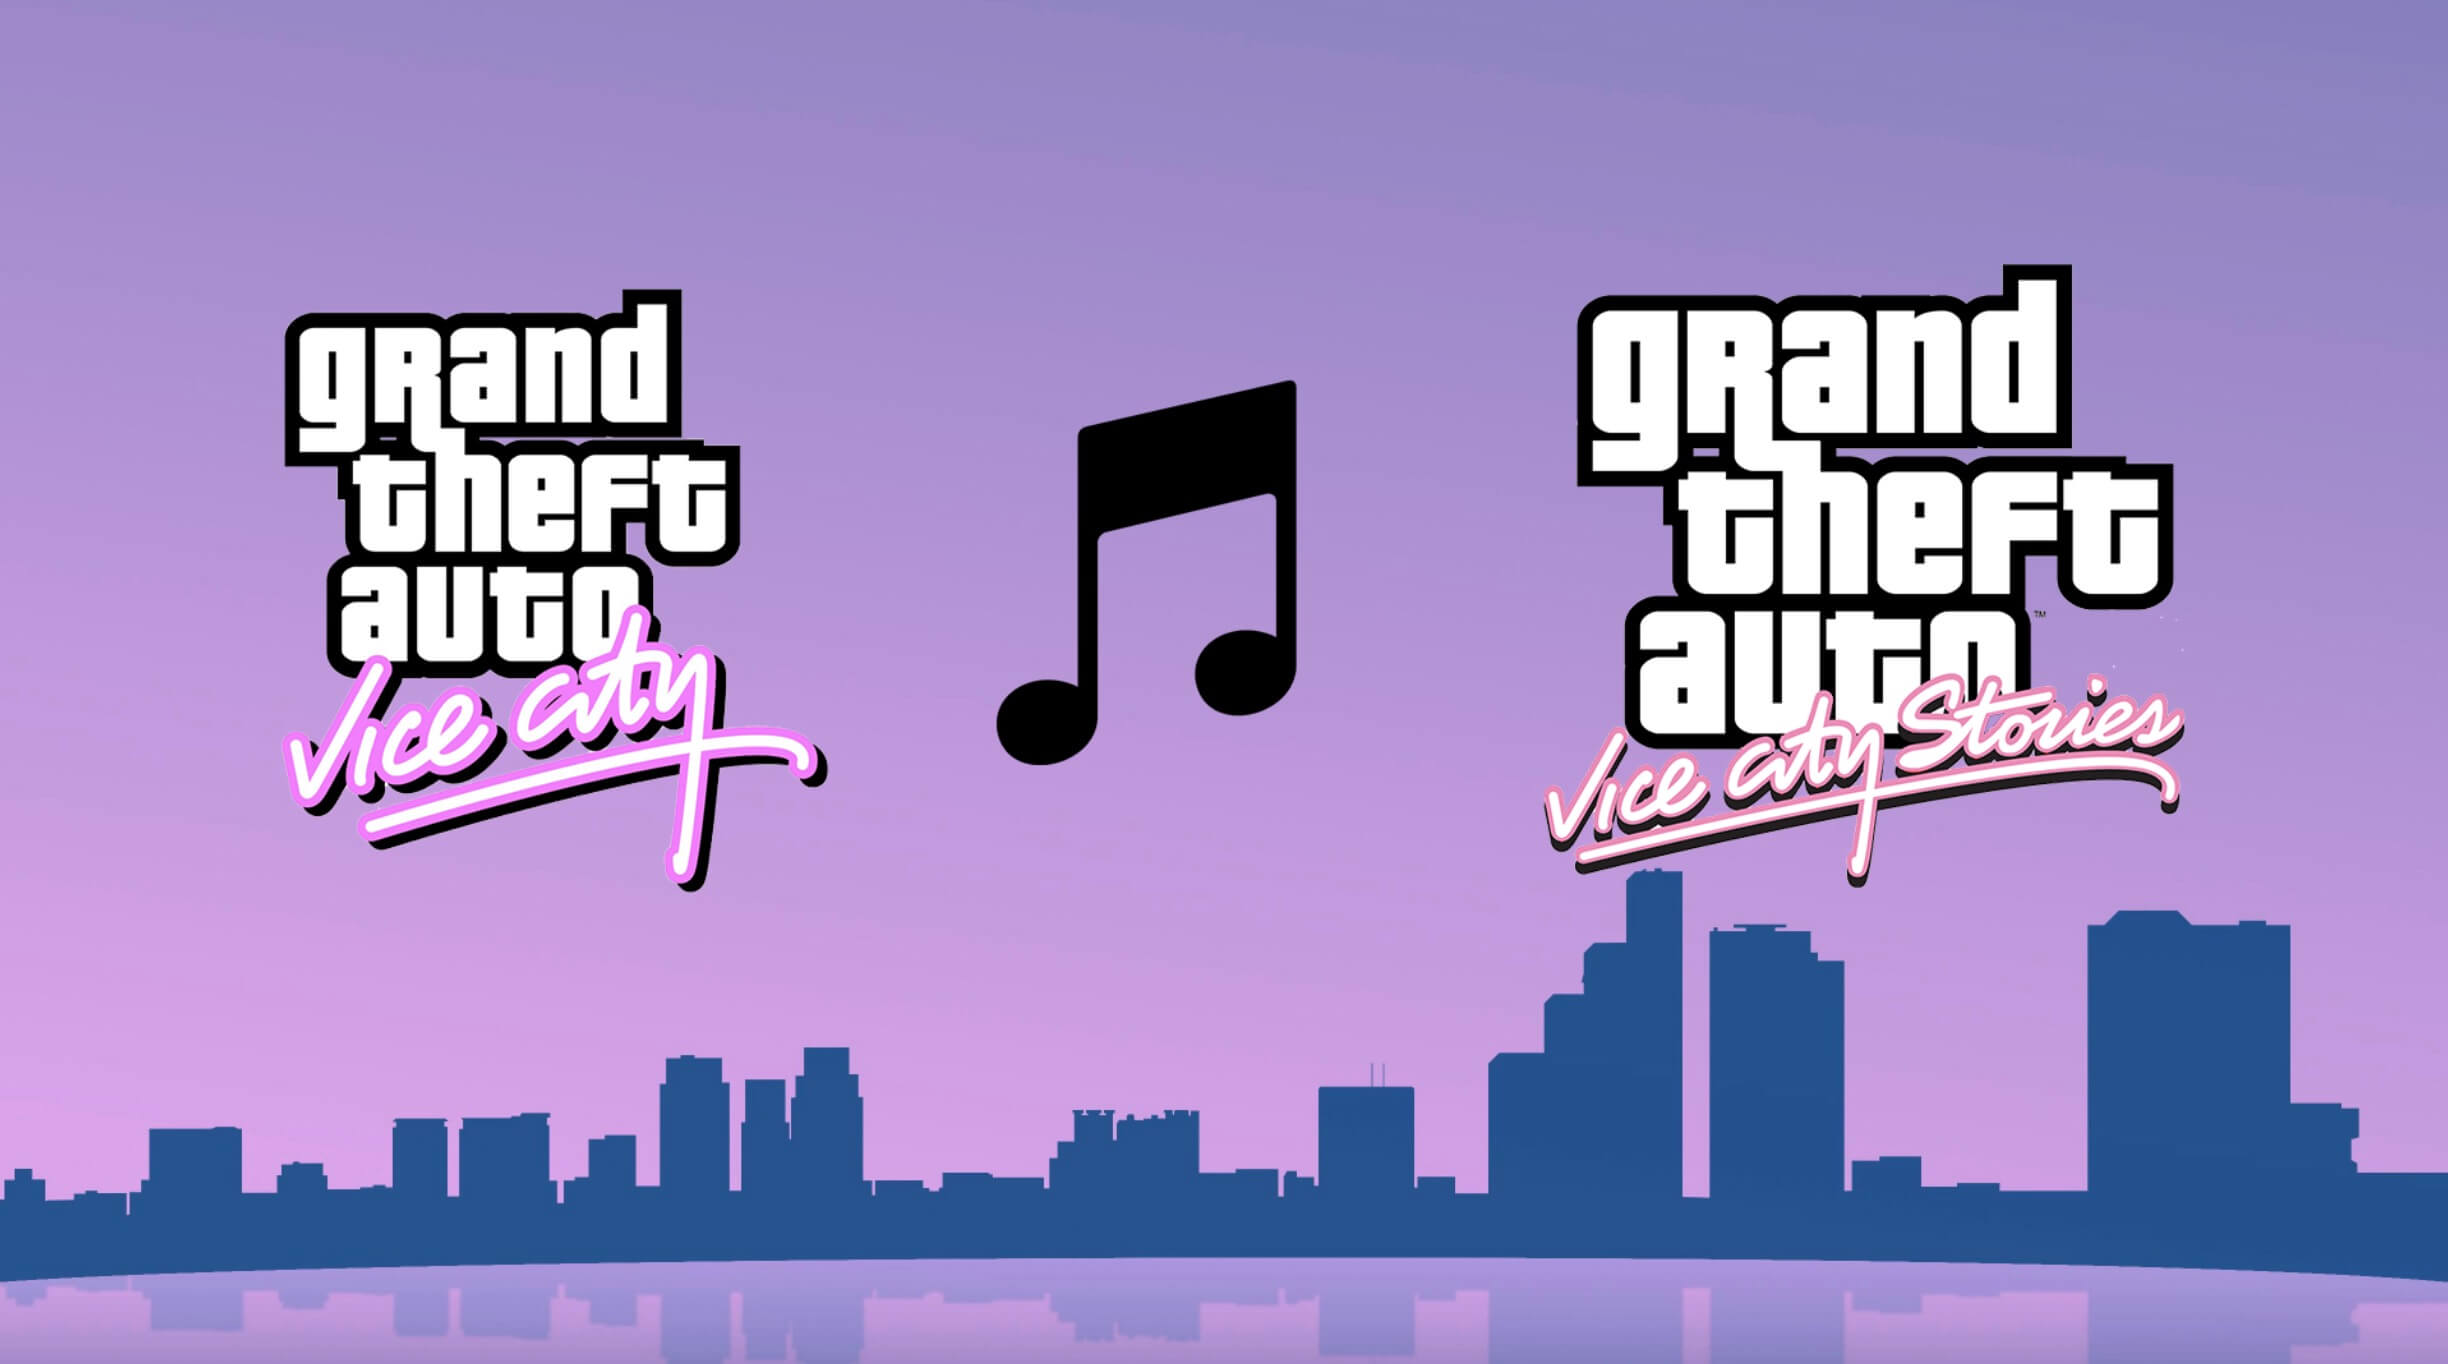 Радио вайс сити. Grand Theft auto: vice City – the Definitive Edition. Вайс Сити обложка. Радио vice City. GTA vice City обложка.